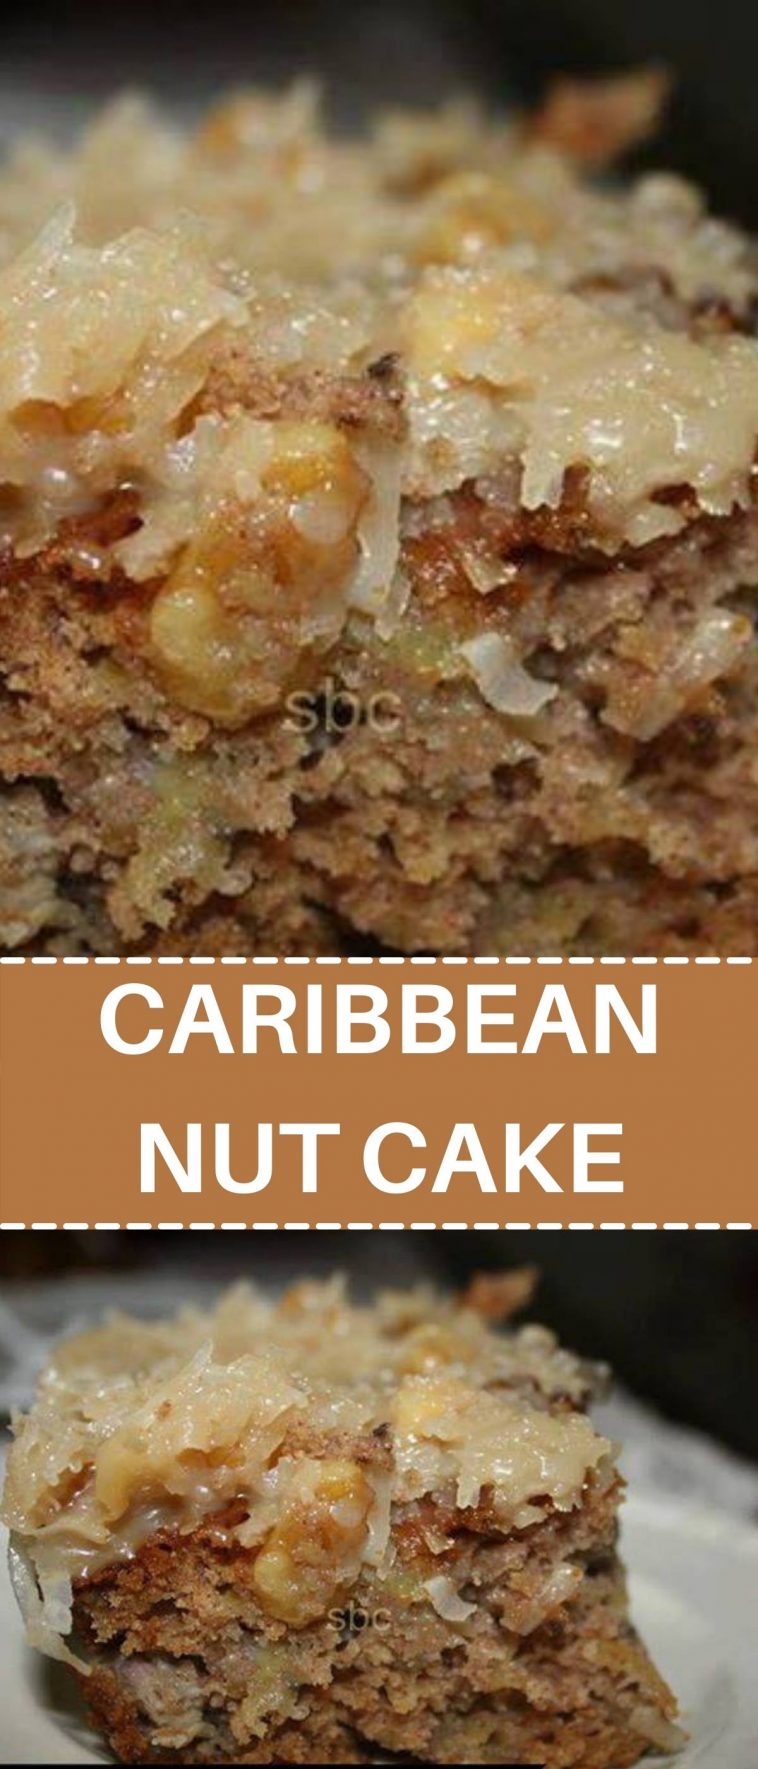 CARIBBEAN NUT CAKE